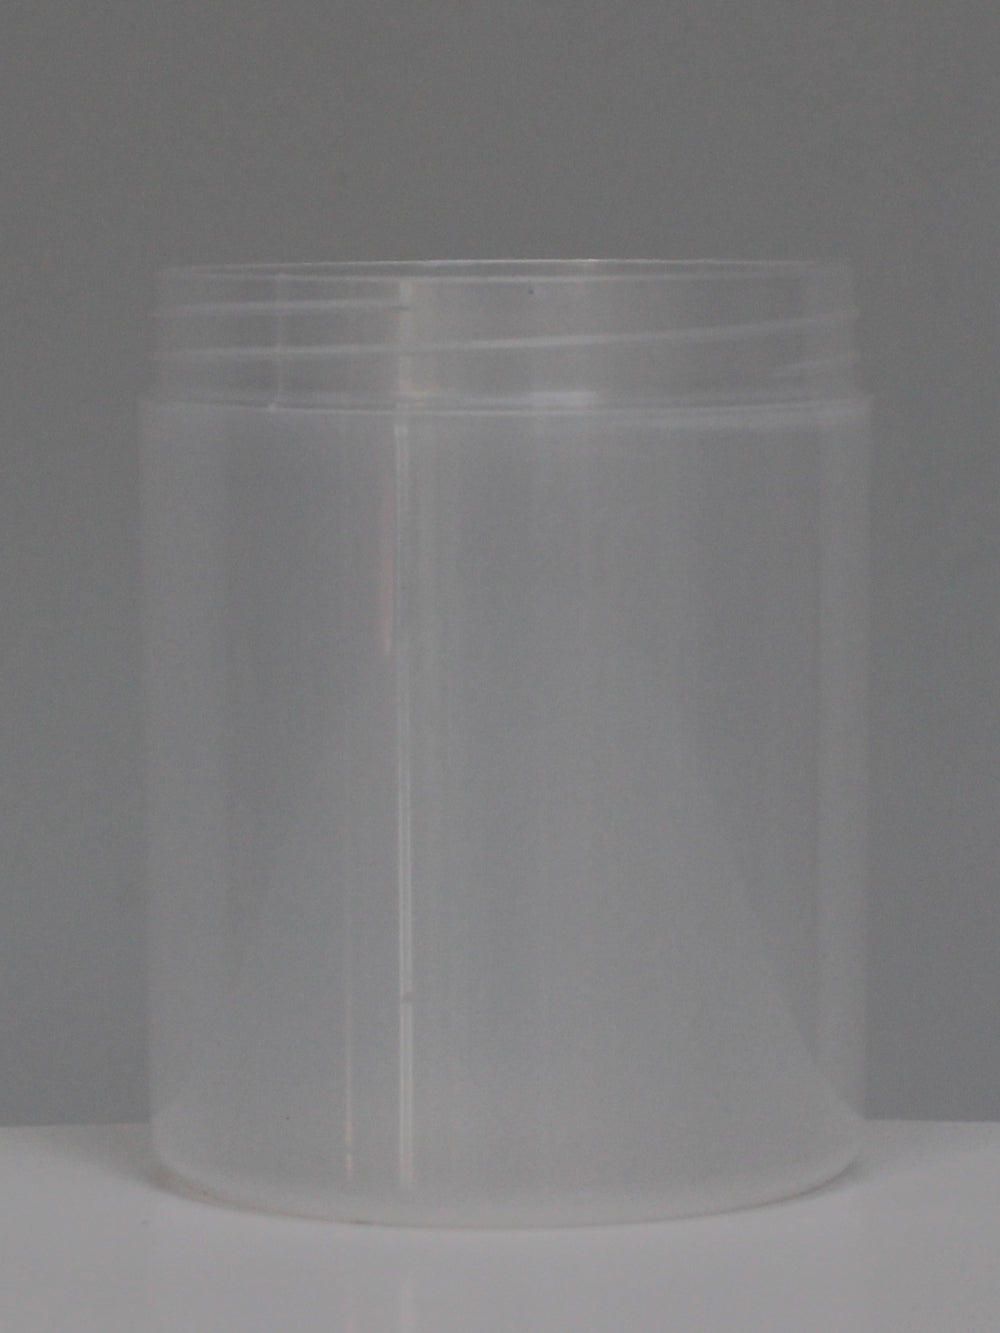 500ml Euro Jar - (Box of 150 units) - Packnet SA